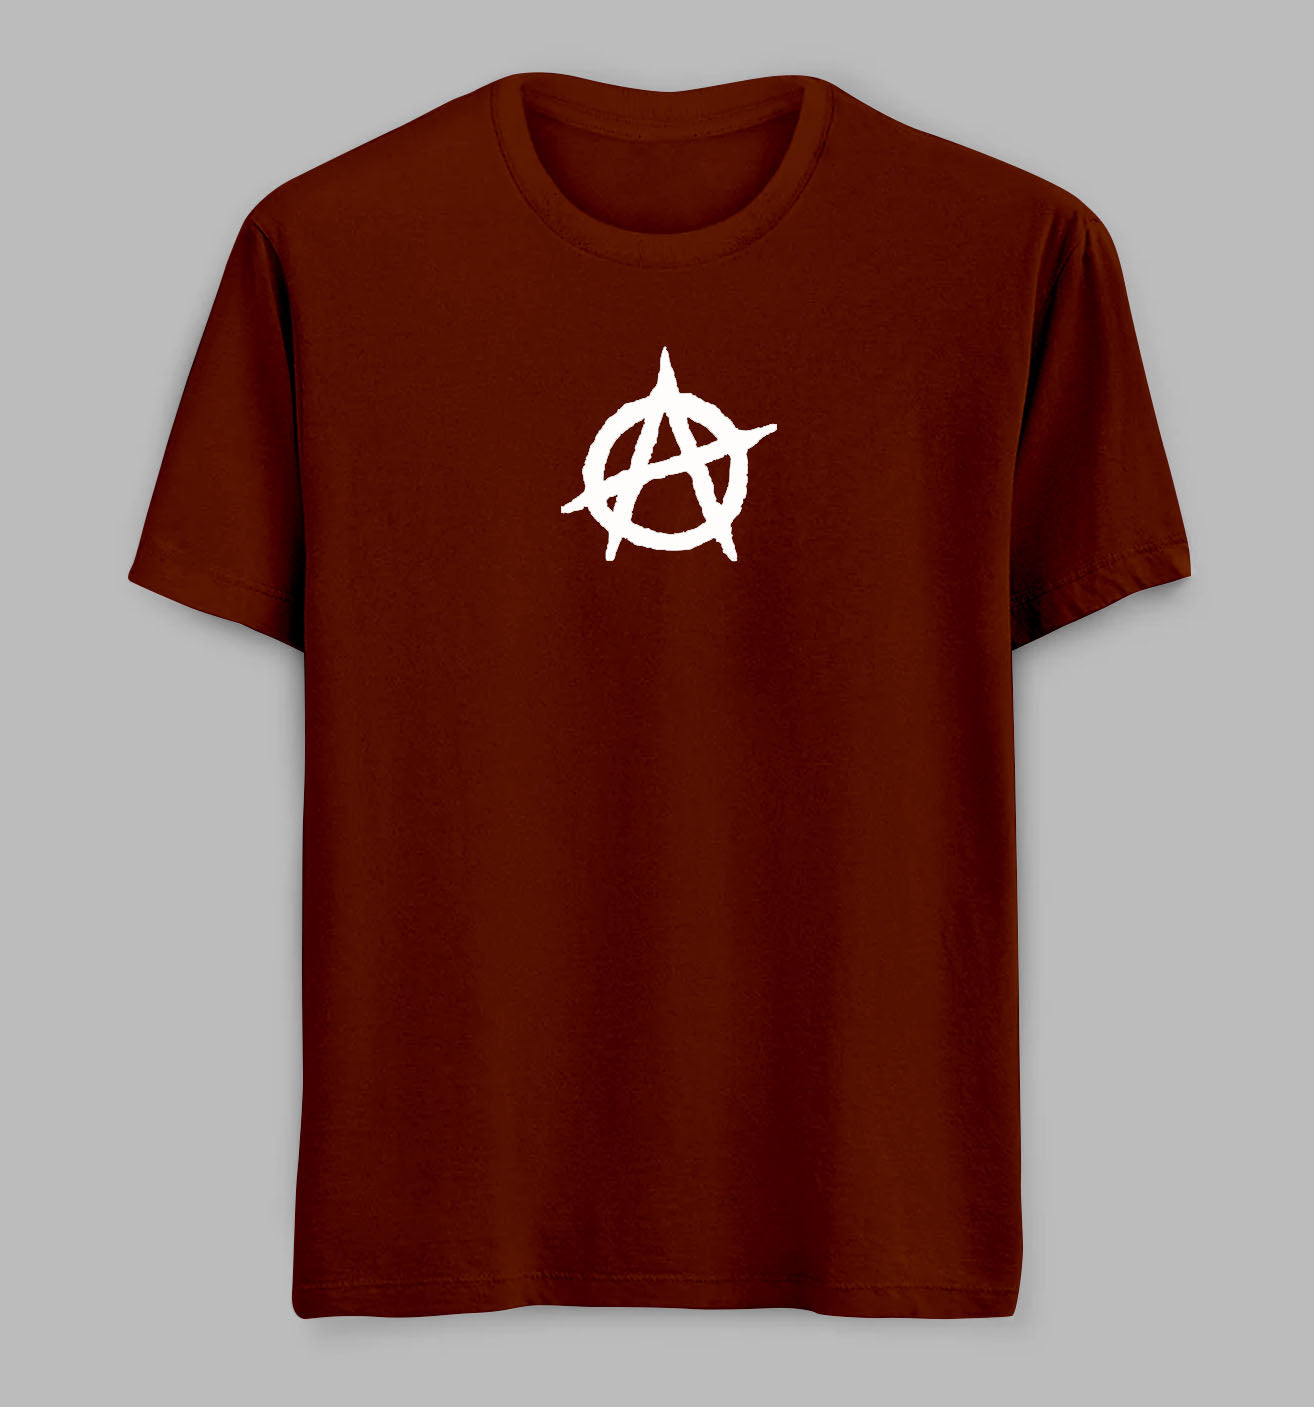 Anarchy Tees/Tshirts